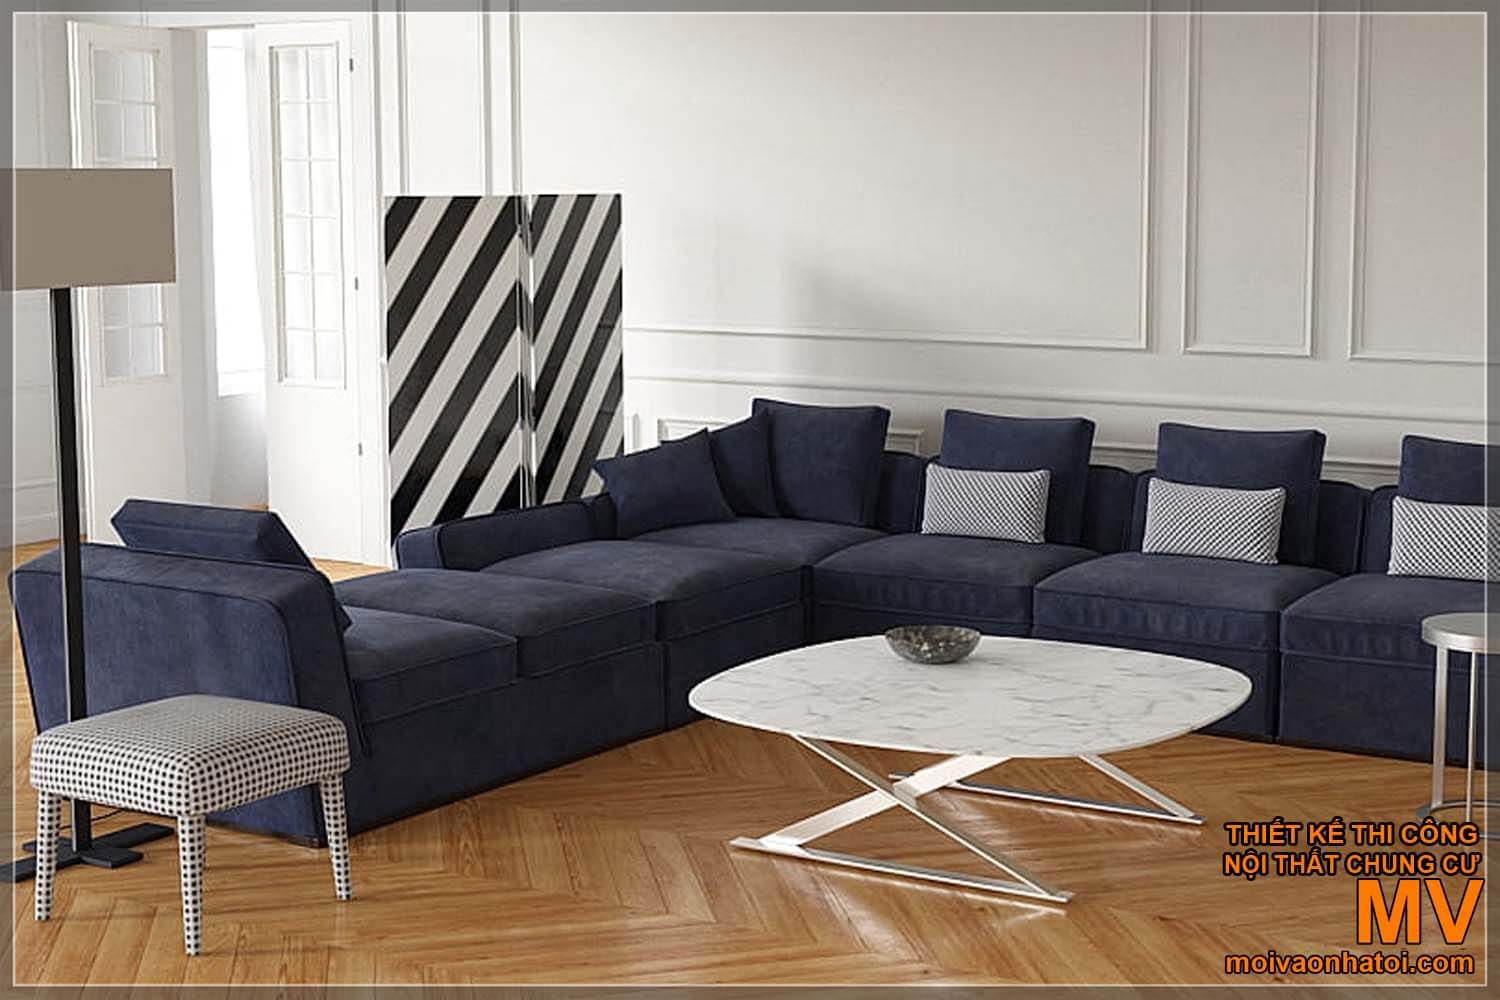 新古典主义房屋的简约现代沙发模型